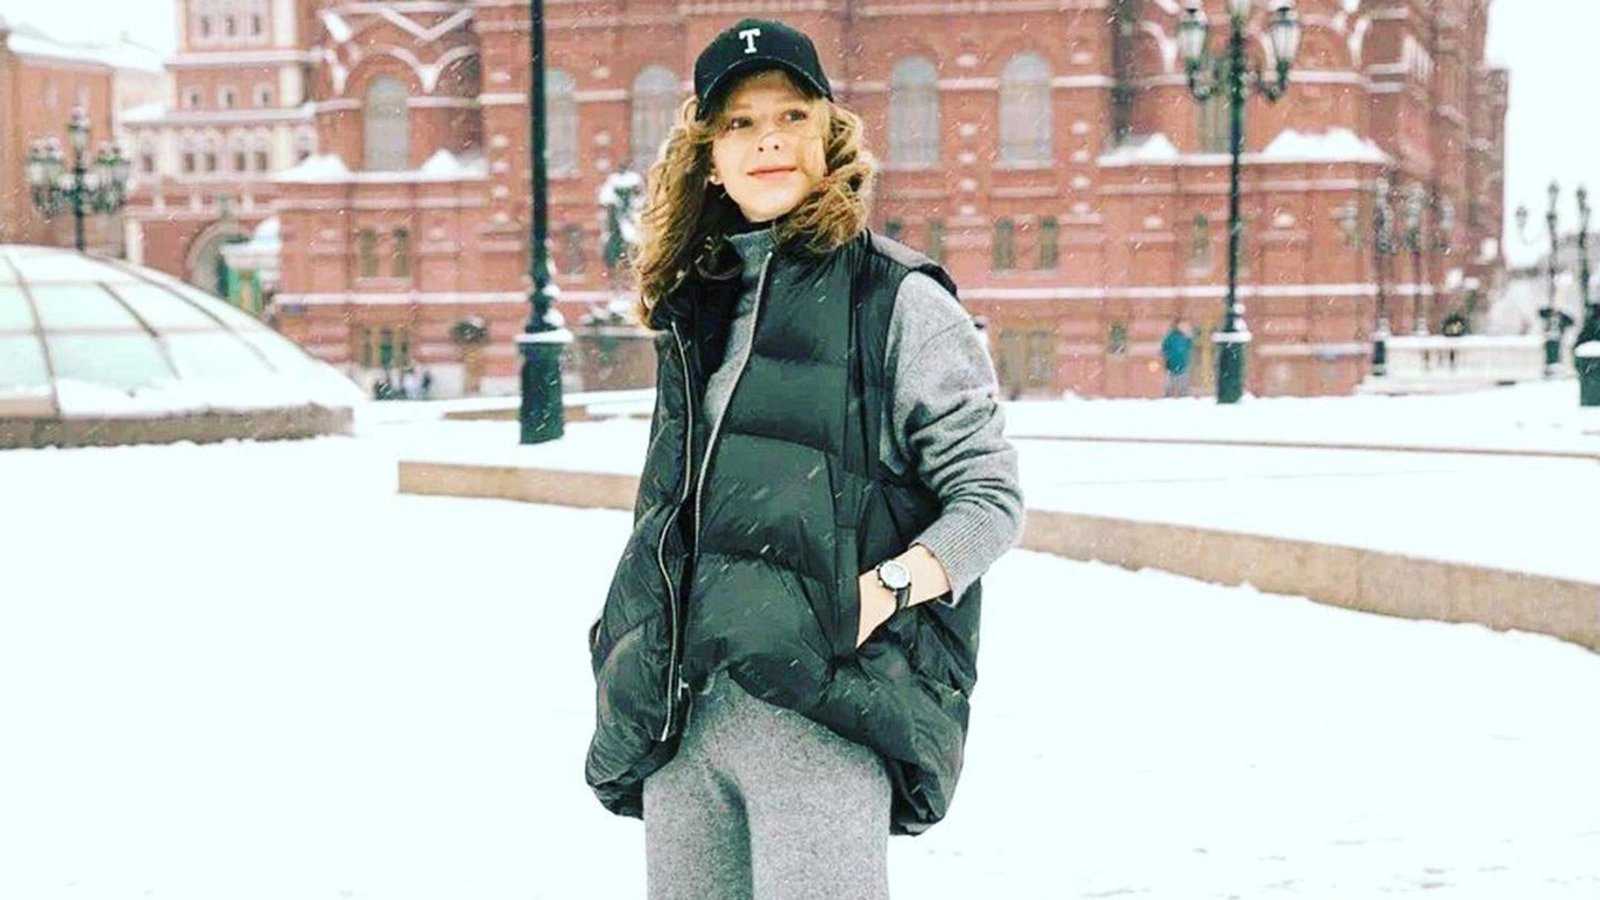 @liza_arzamasova / Instagram (входит в корпорацию Meta, признана экстремистской и запрещена в России)